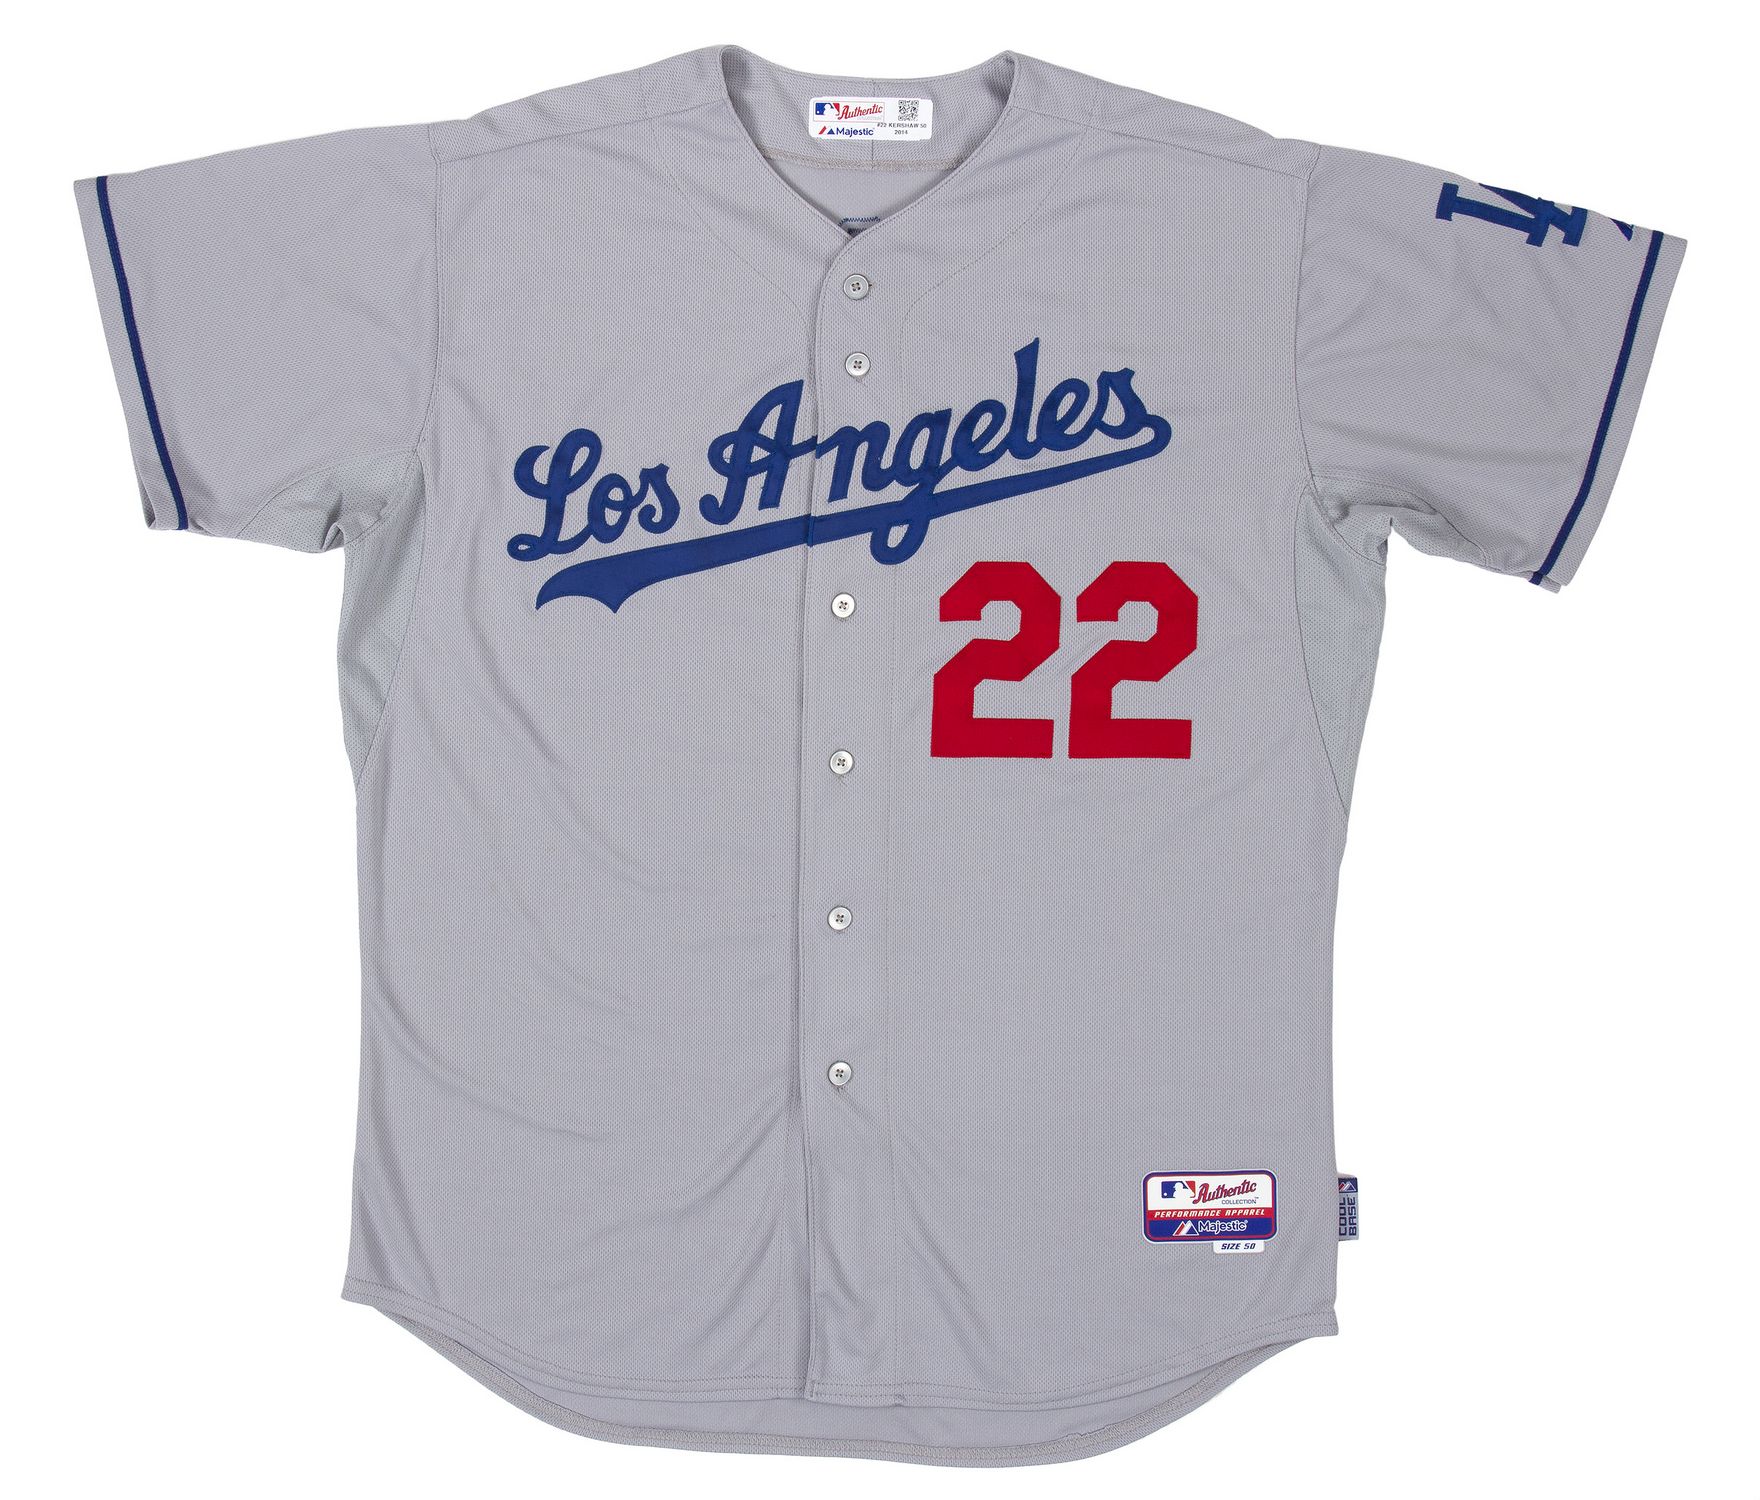 Dodgers to wear alternate road jerseys in 2014 - True Blue LA